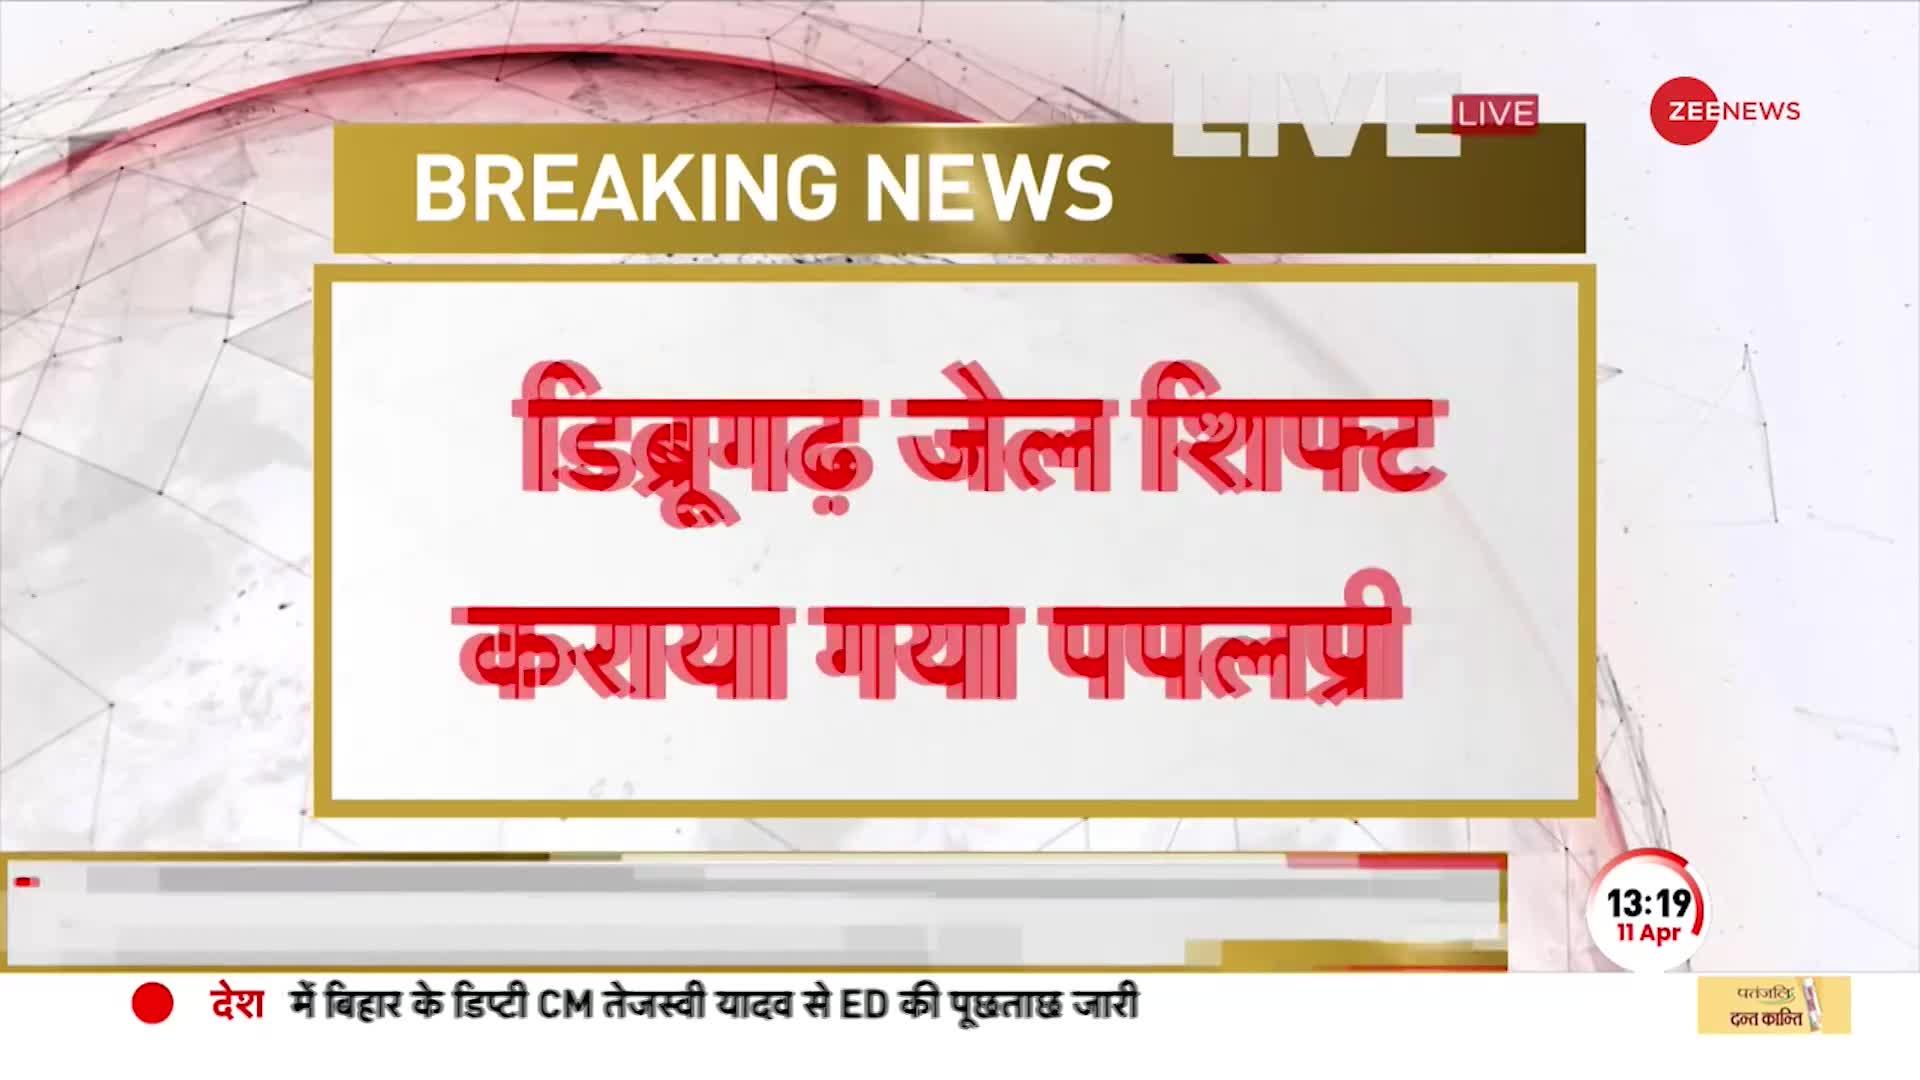 Papalpreet On Amritpal Singh: अमृतपाल पर पपलप्रीत सिंह का बड़ा बयान, 'सरेंडर करेगा या नहीं पता नहीं'